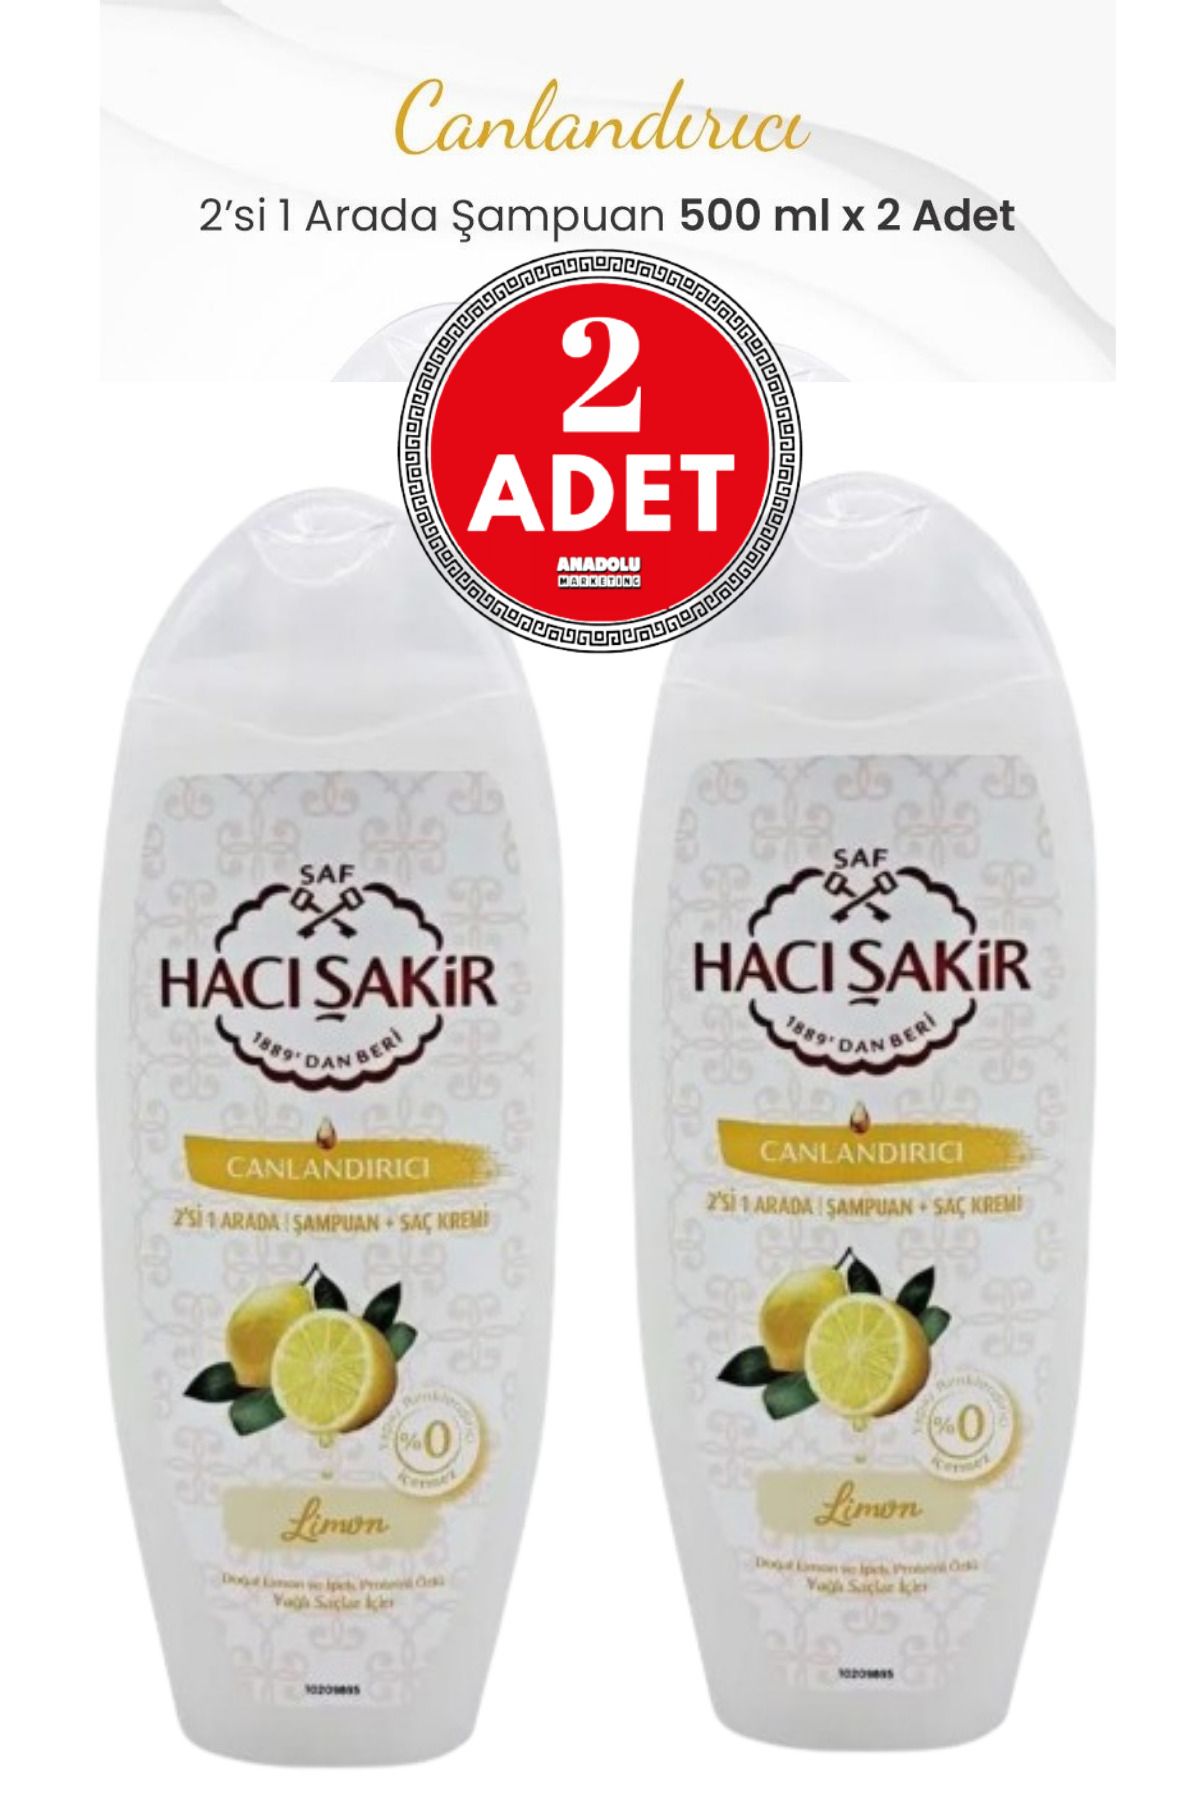 Hacı Şakir Limon 2si 1 Arada Şampuan Canlandırıcı 500 Ml 2 Adet